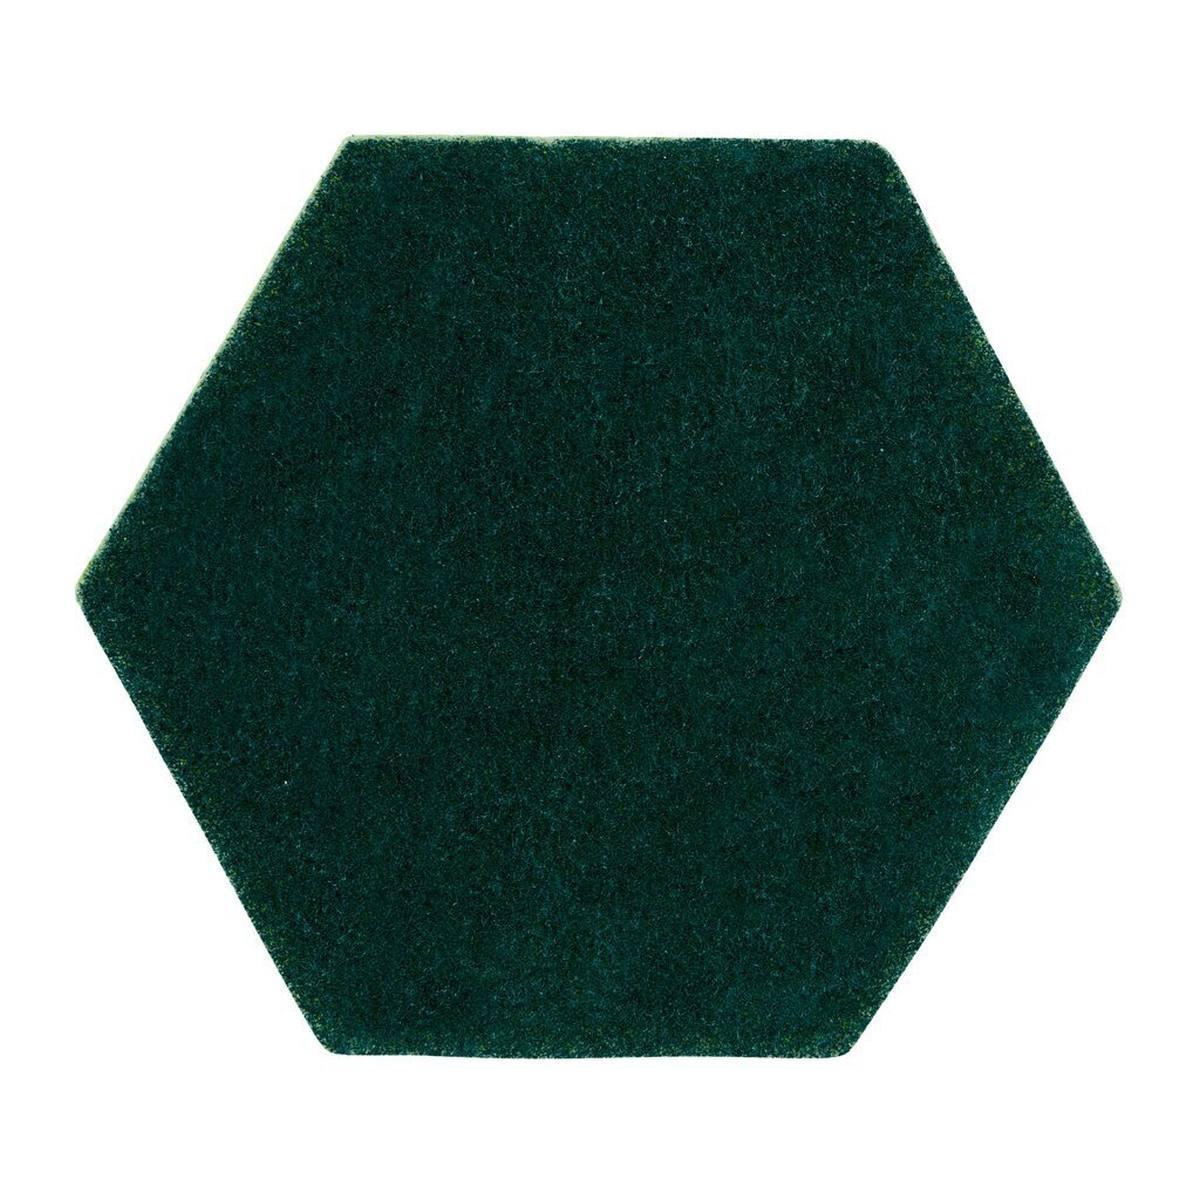 3M Scotch-Brite pad à main 2 en 1 96HEX, vert/jaune, 147 mm x 127 mm